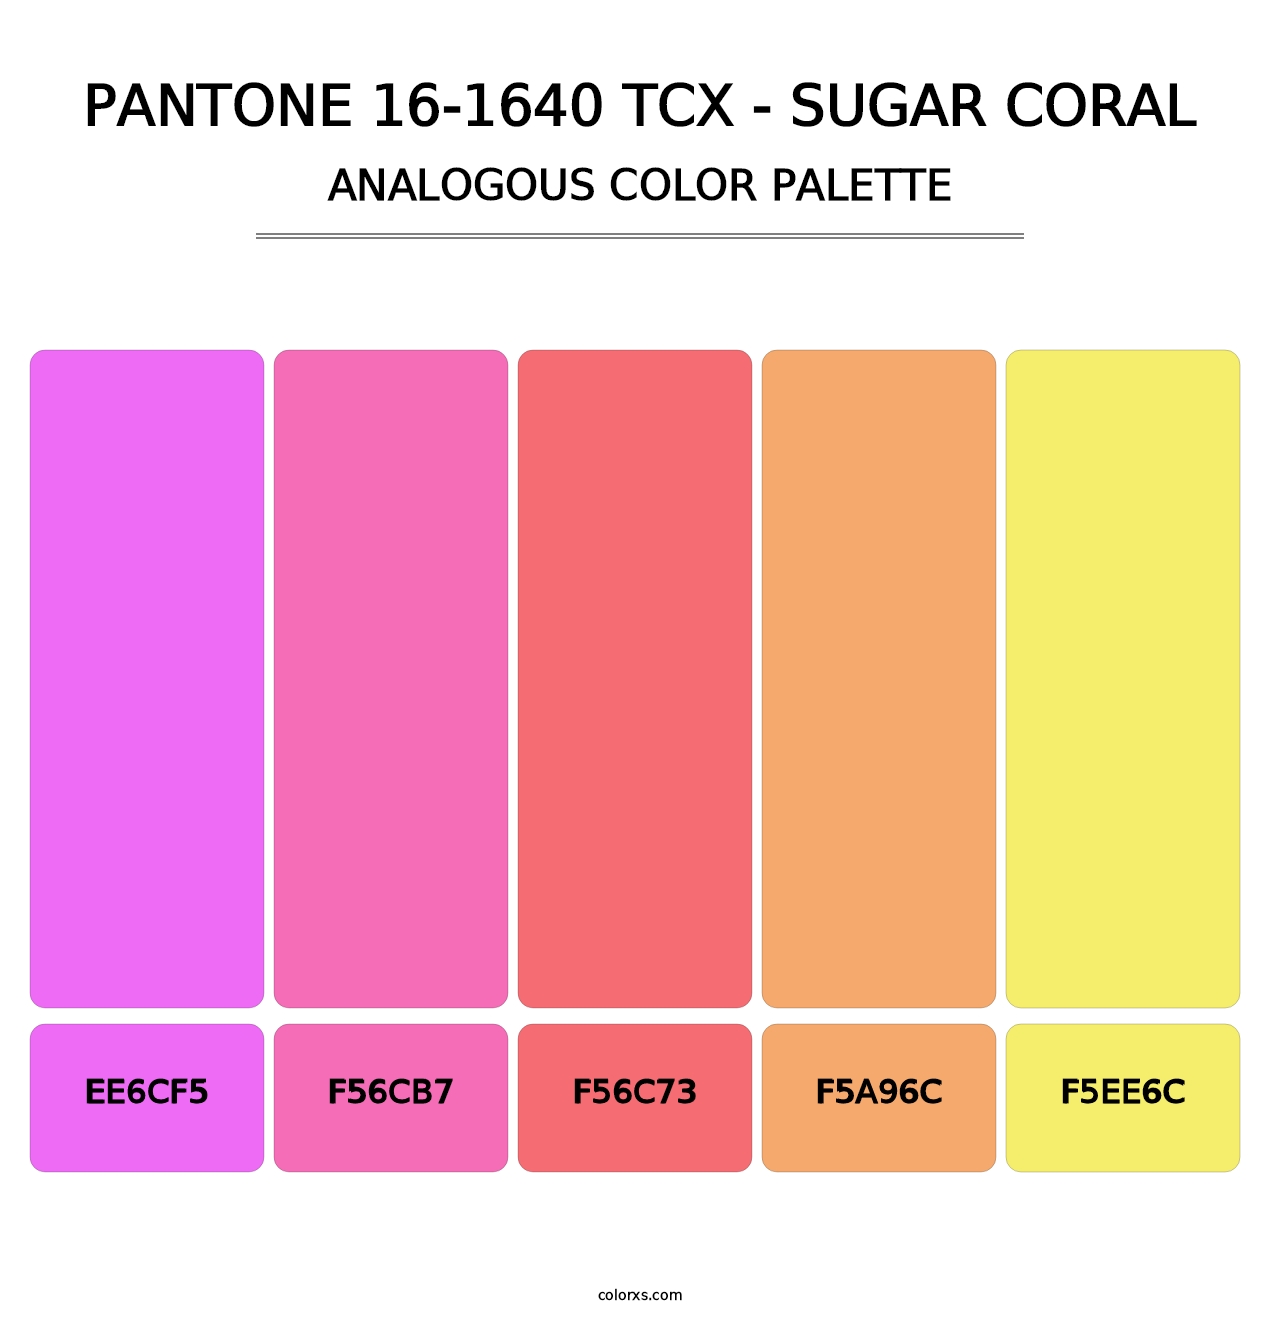 PANTONE 16-1640 TCX - Sugar Coral - Analogous Color Palette